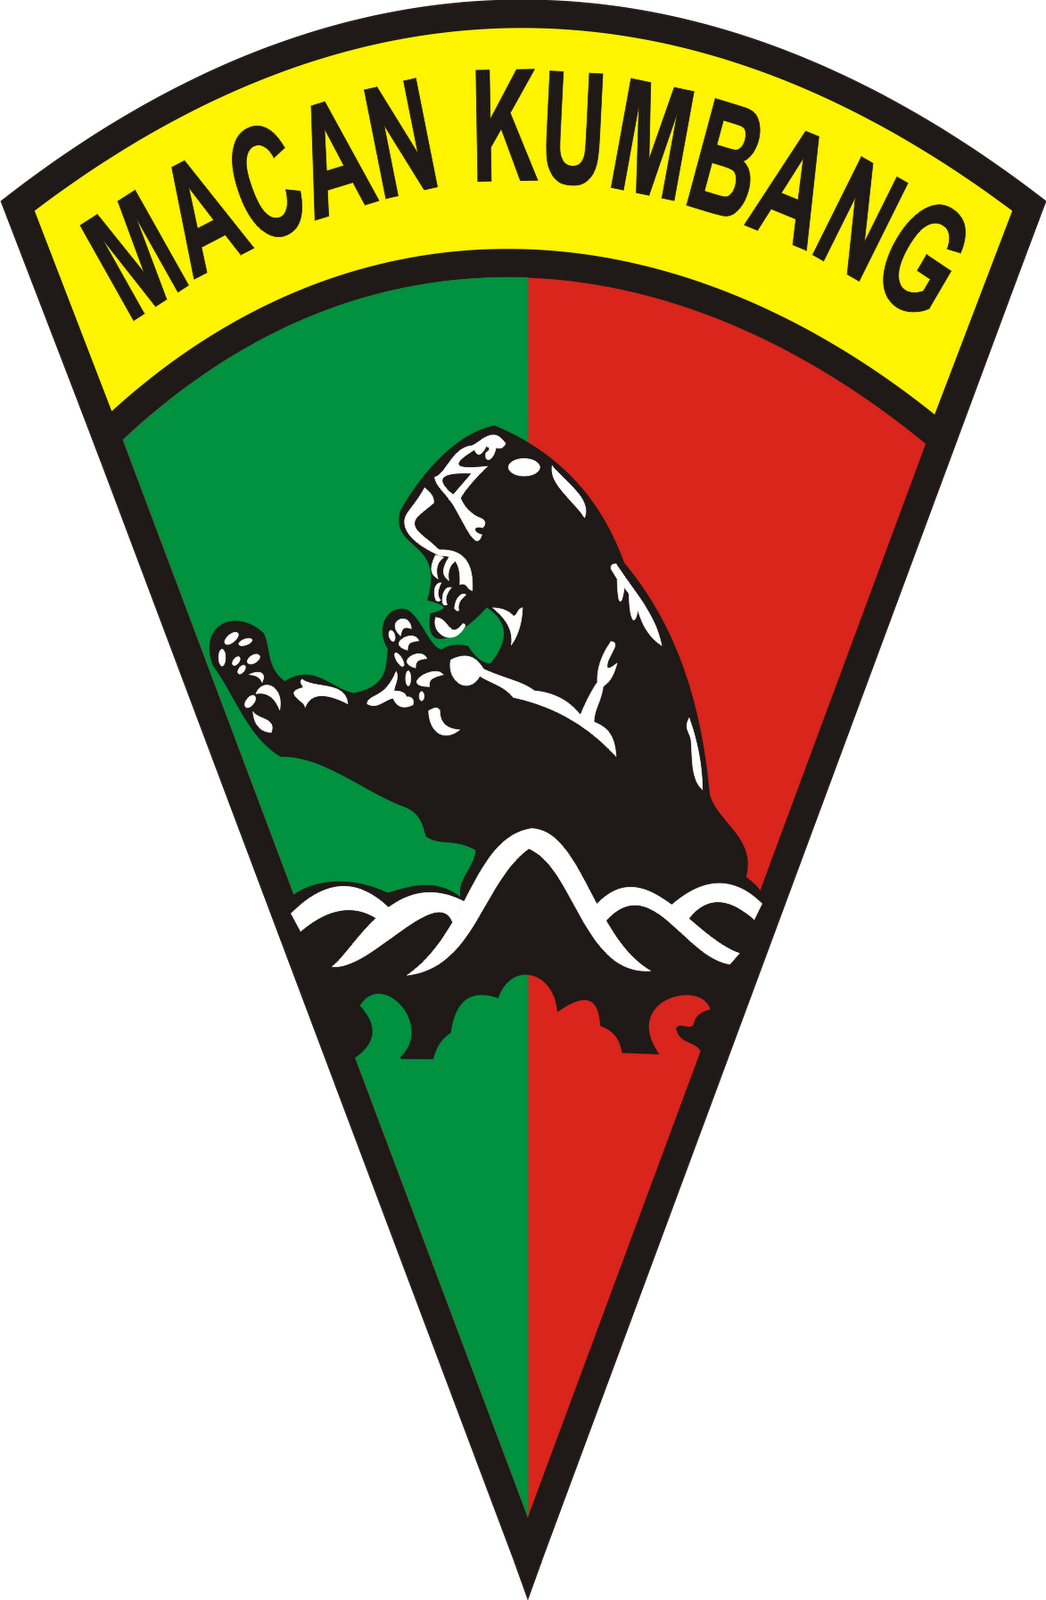  Logo  Batalyon Infantri Yonif 121 Macan  Kumbang  Deli 